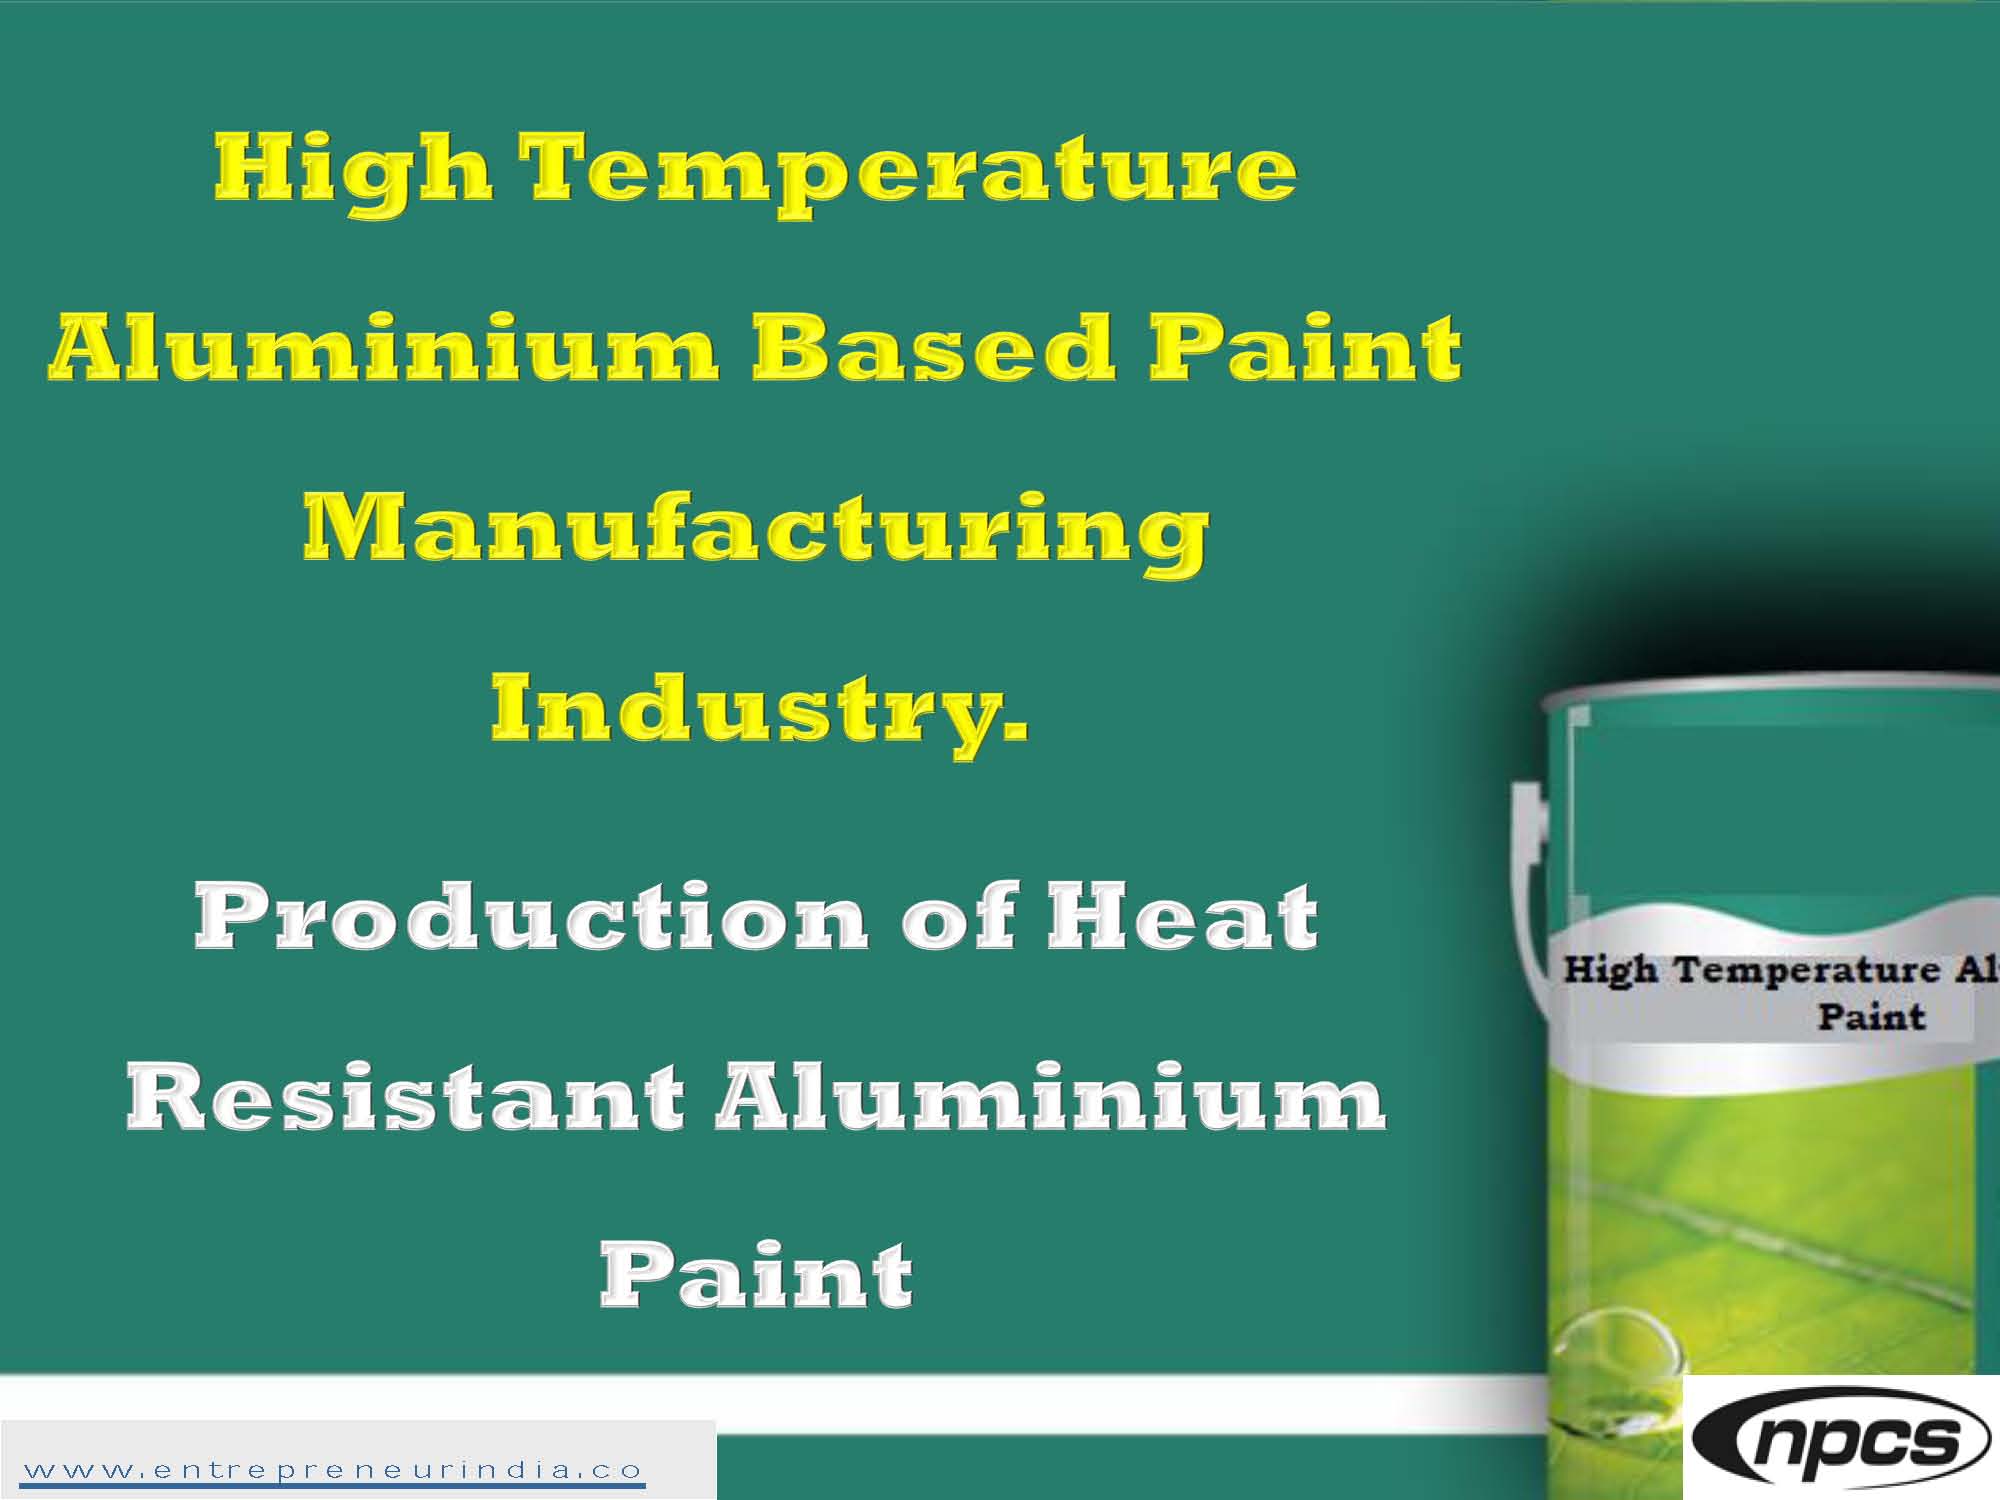 High Temperature Aluminium Based Paint Manufacturing Industry